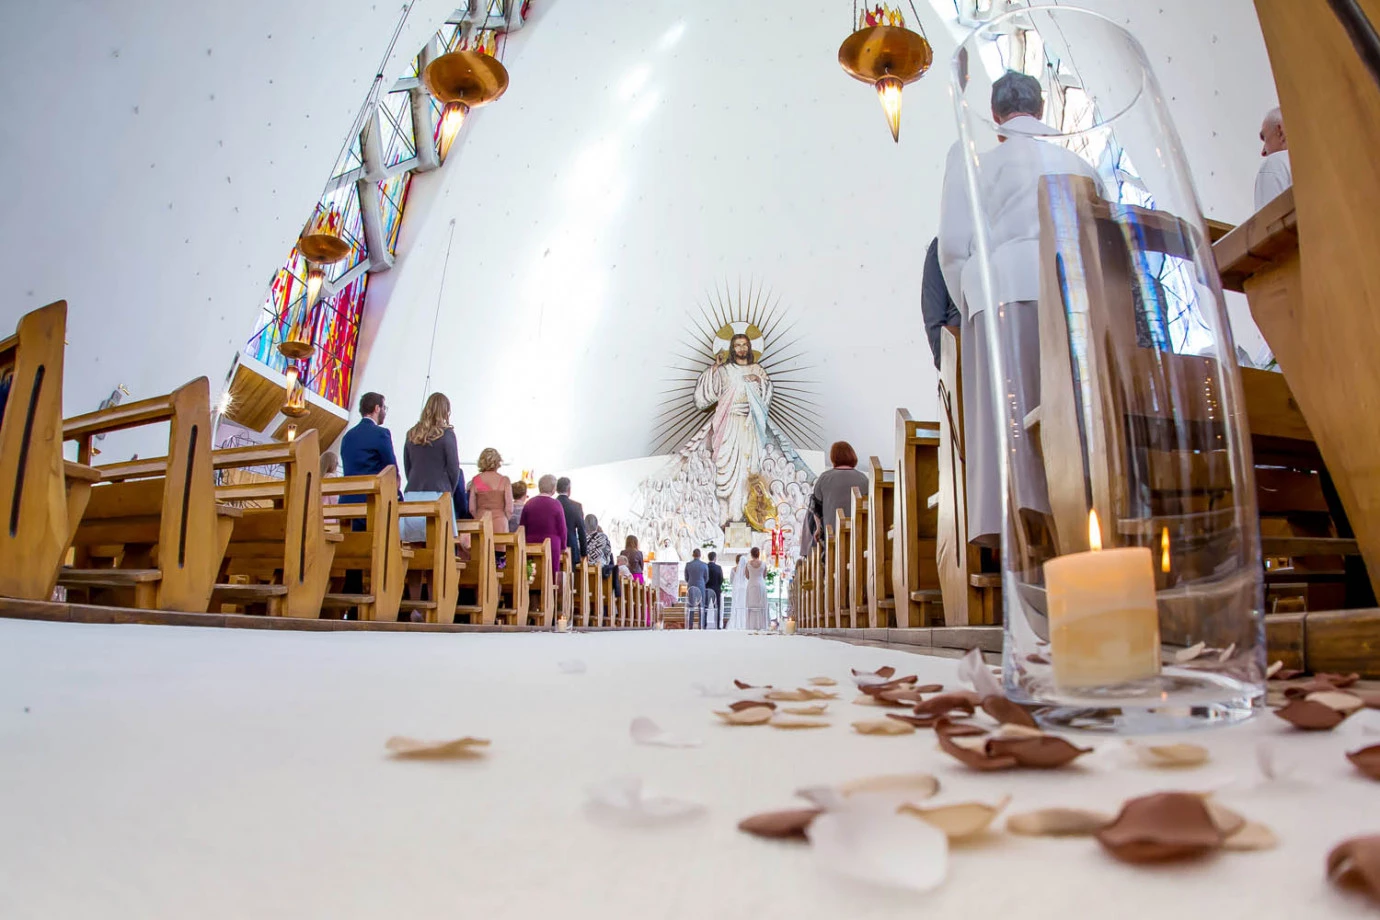 zdjęcia wroclaw fotograf masterfilm portfolio zdjecia slubne inspiracje wesele plener slubny sesja slubna